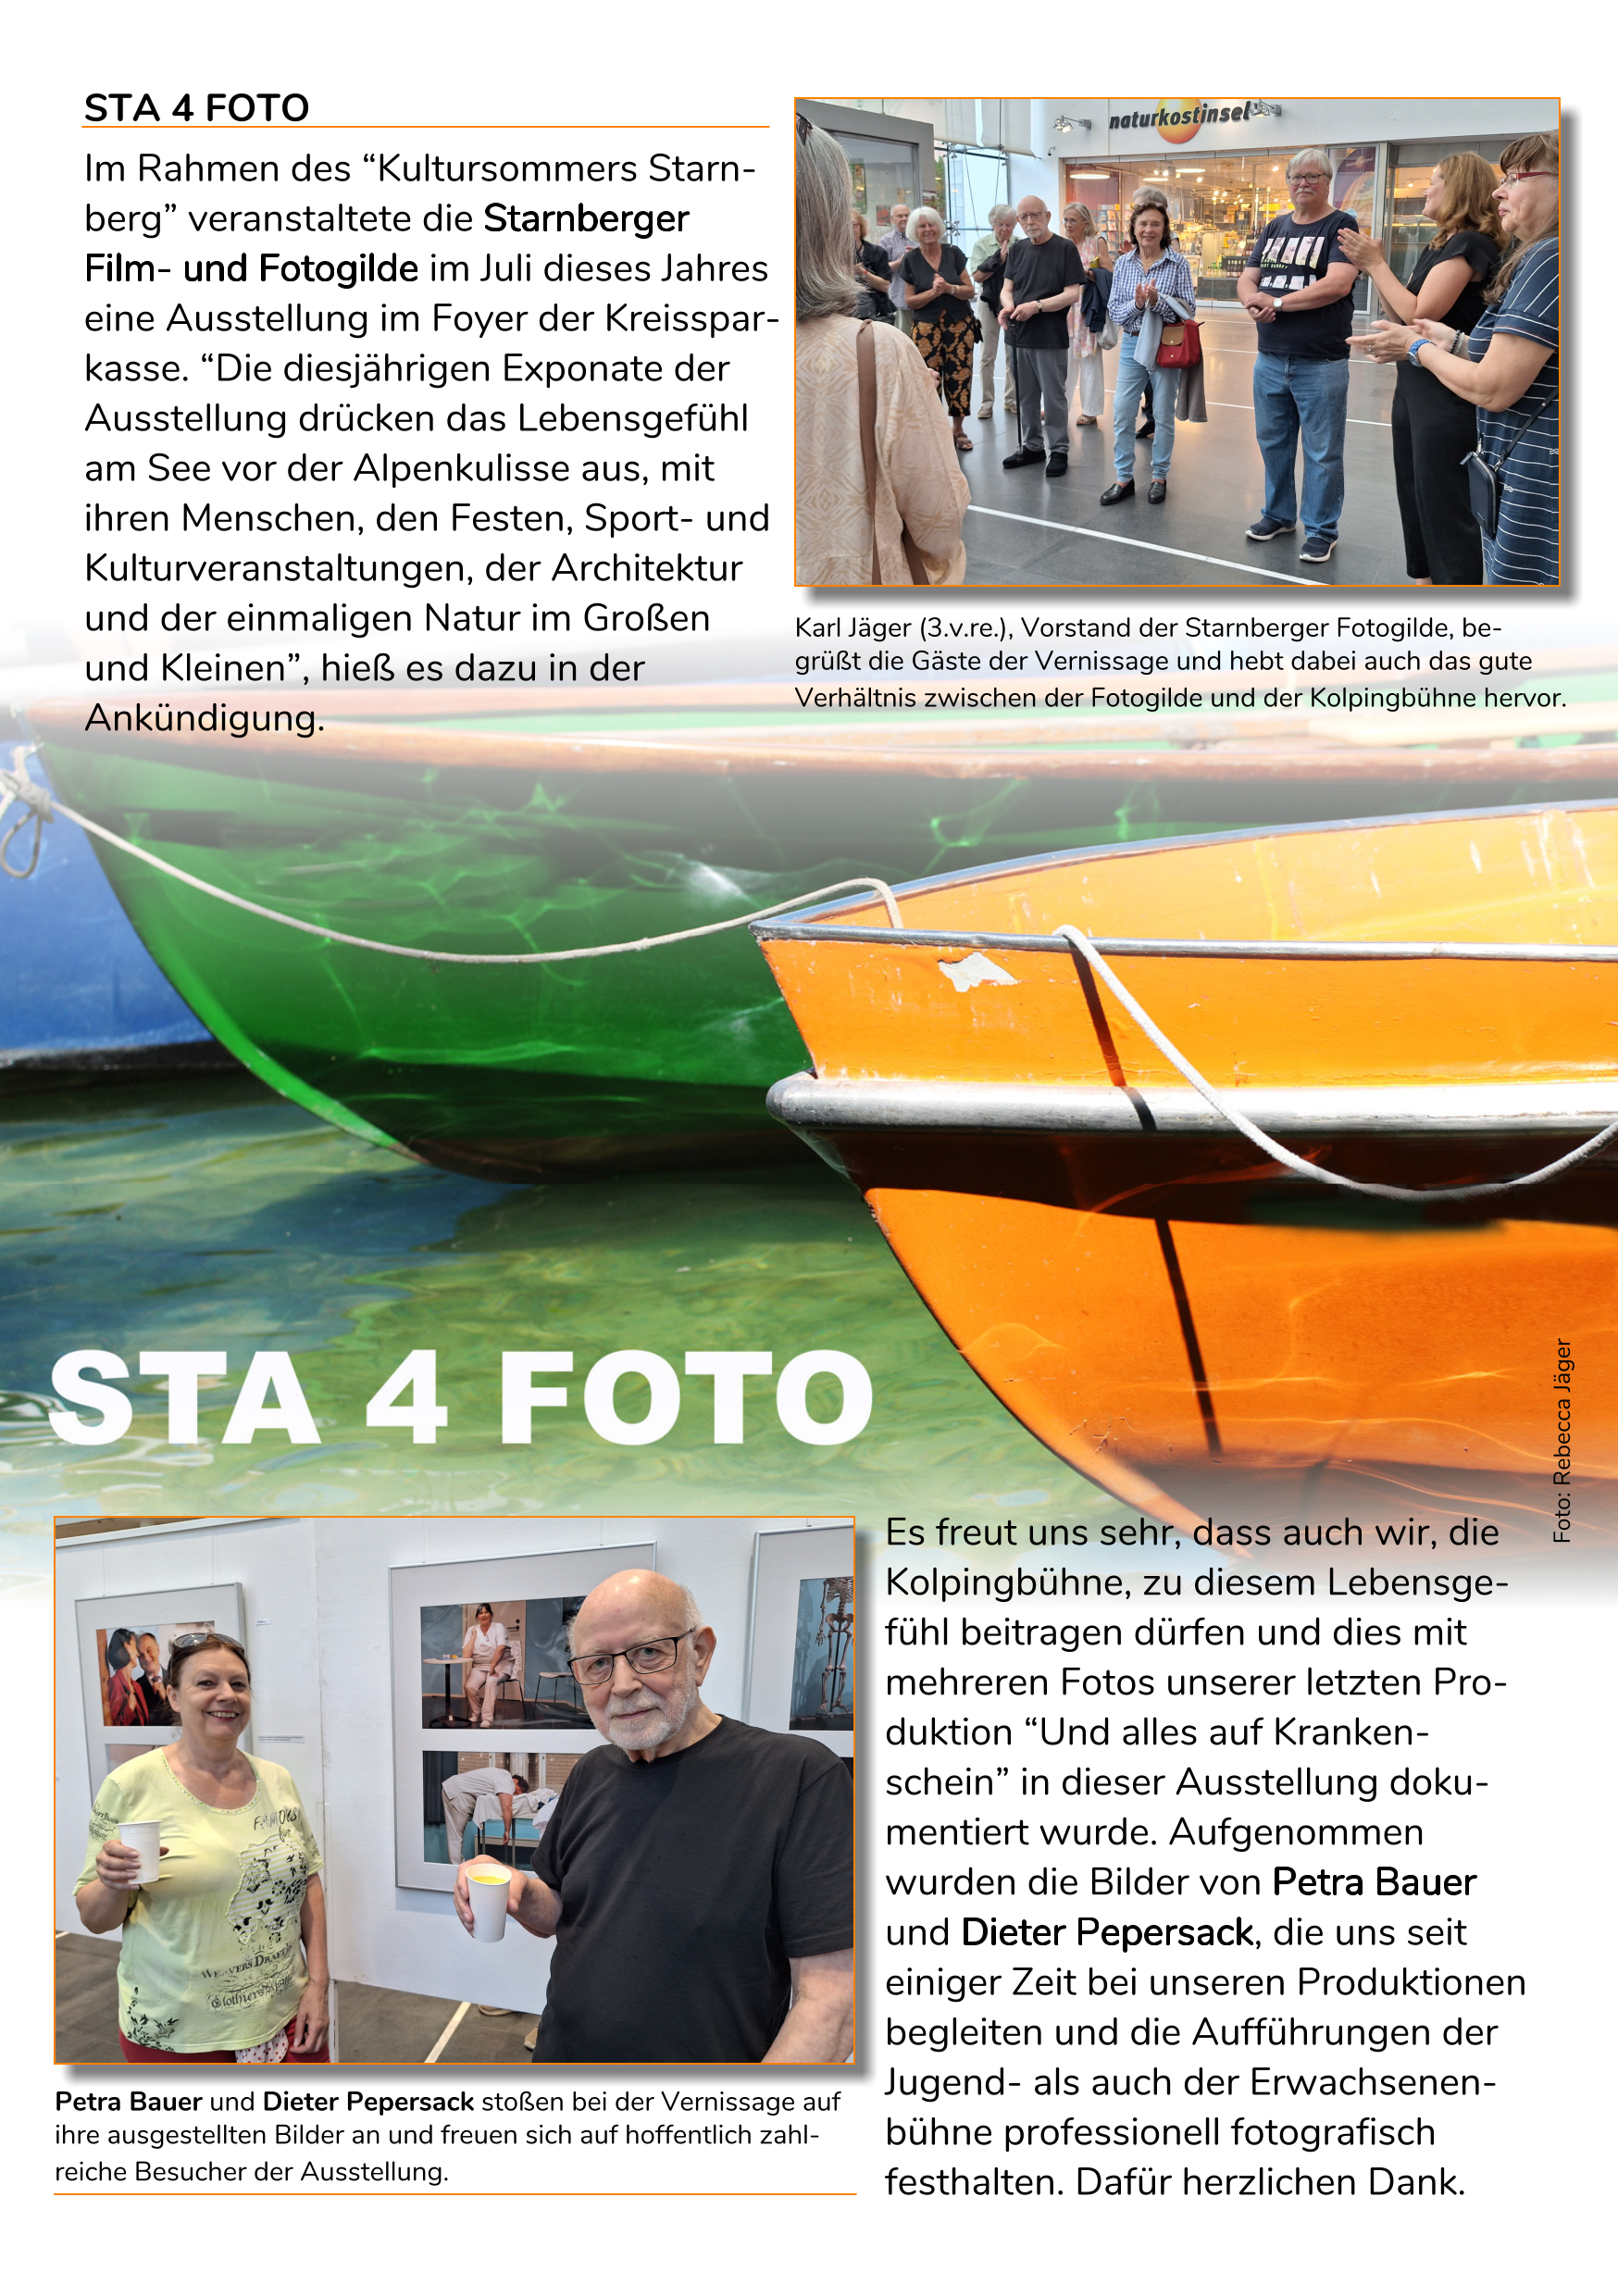 Bericht-STA-4-FOTO-Vernissage-im-Programmheft-der-Kolpingbuehne